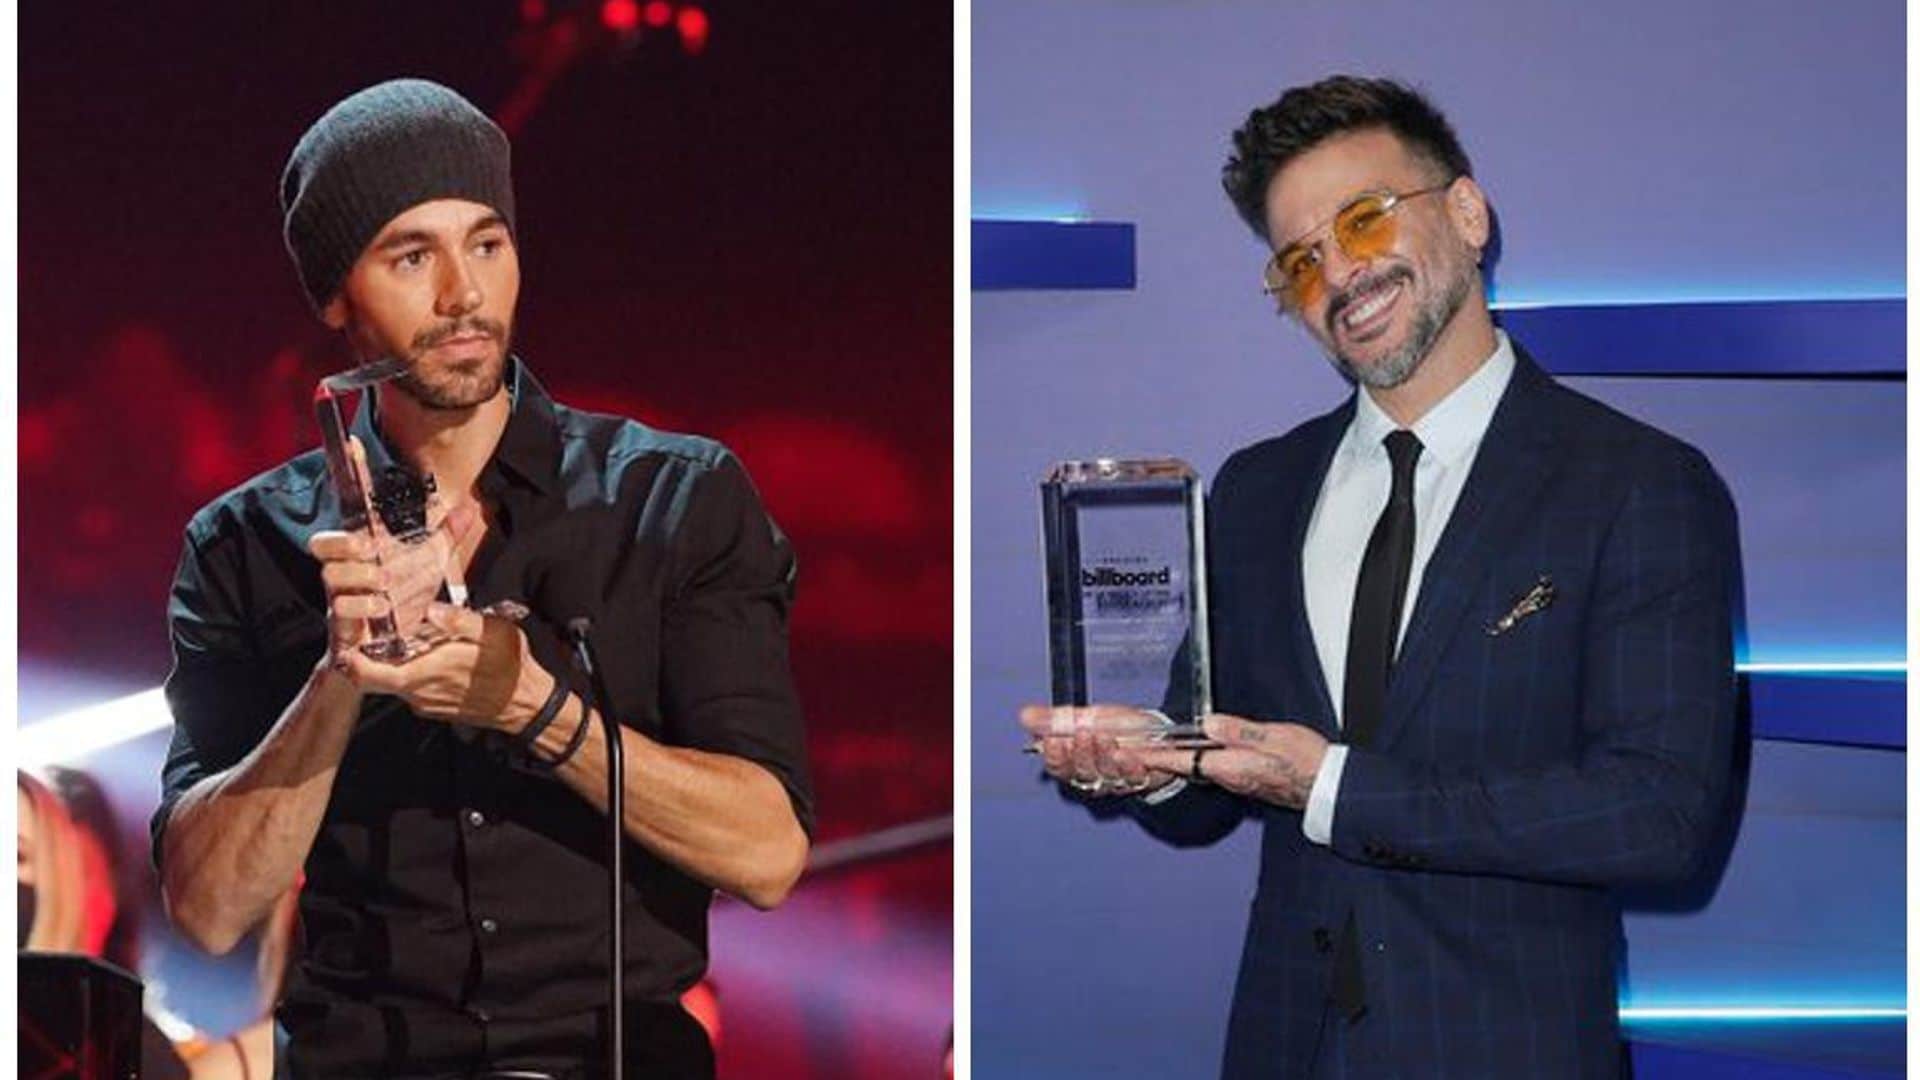 Billboard Latin Music Awards 2020: Ellos son los ganadores de la noche